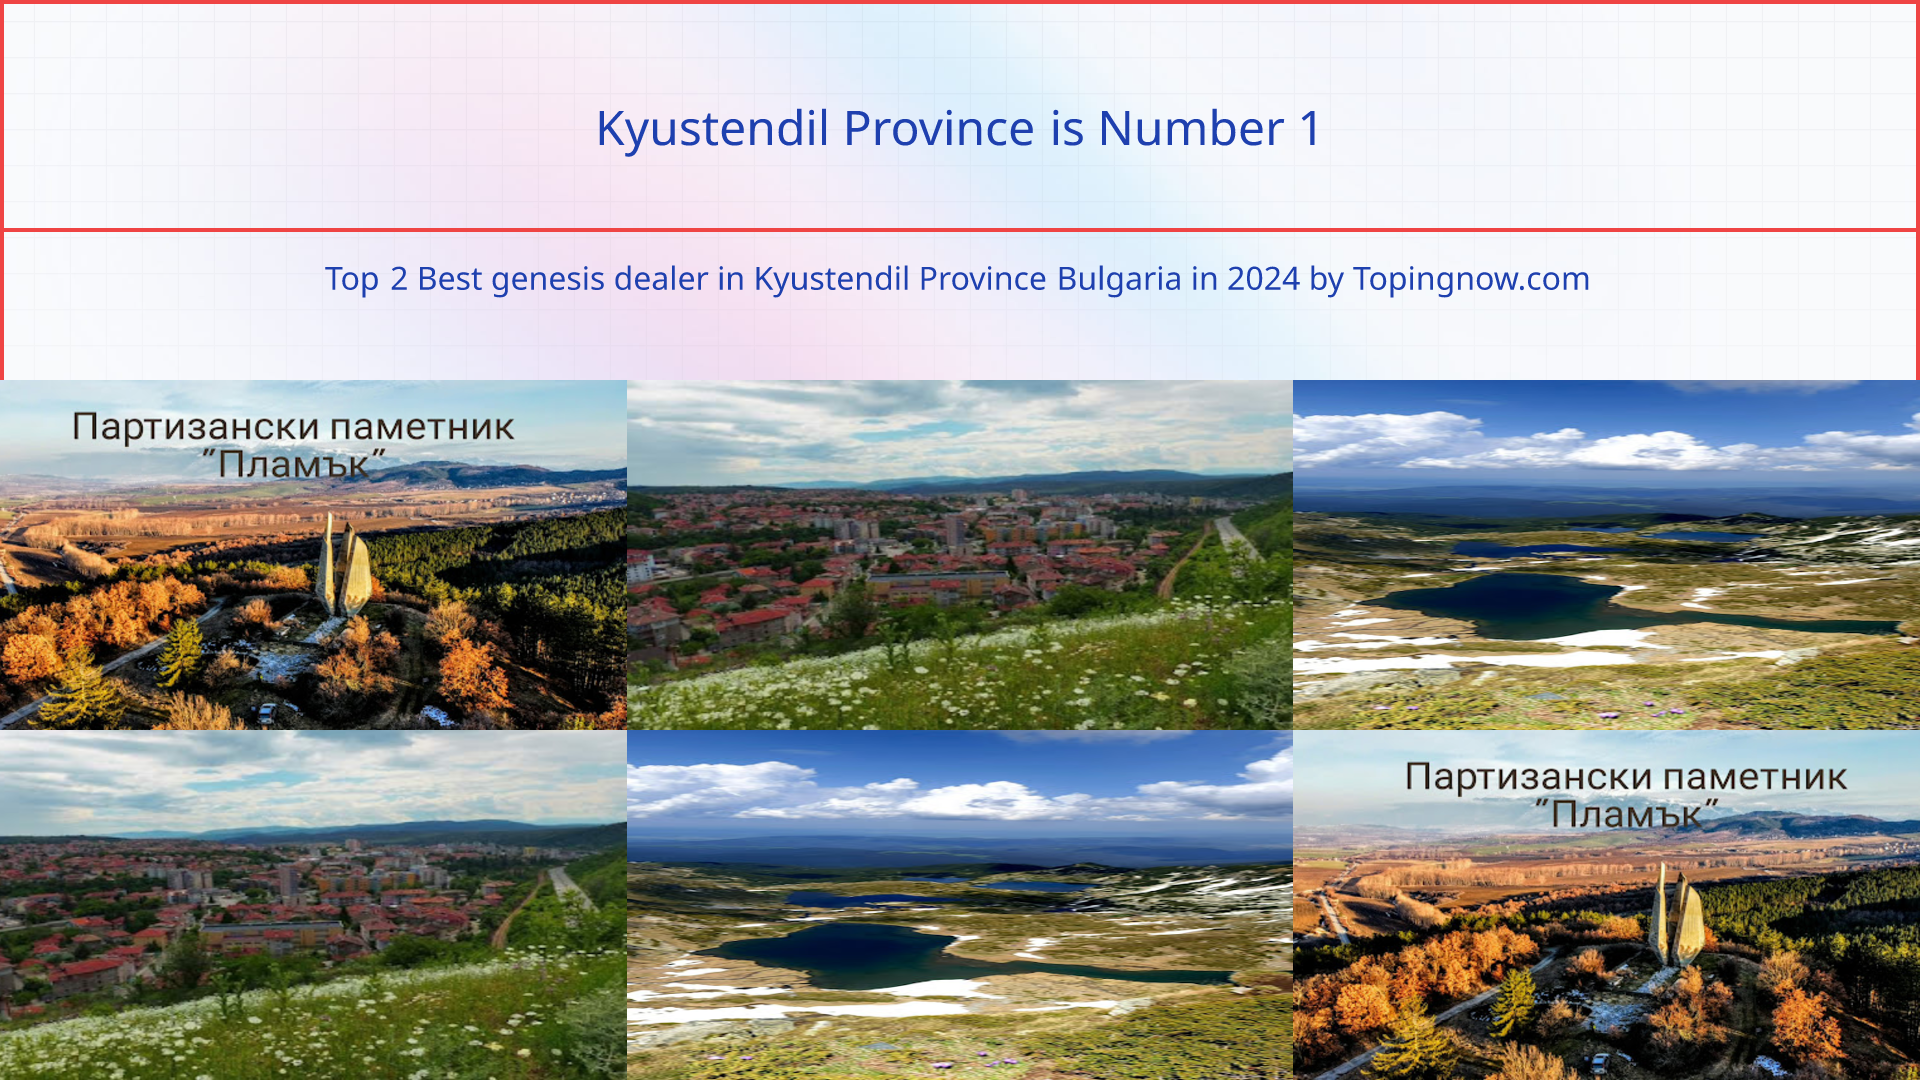 Kyustendil Province: Top 2 Best genesis dealer in Kyustendil Province Bulgaria in 2024